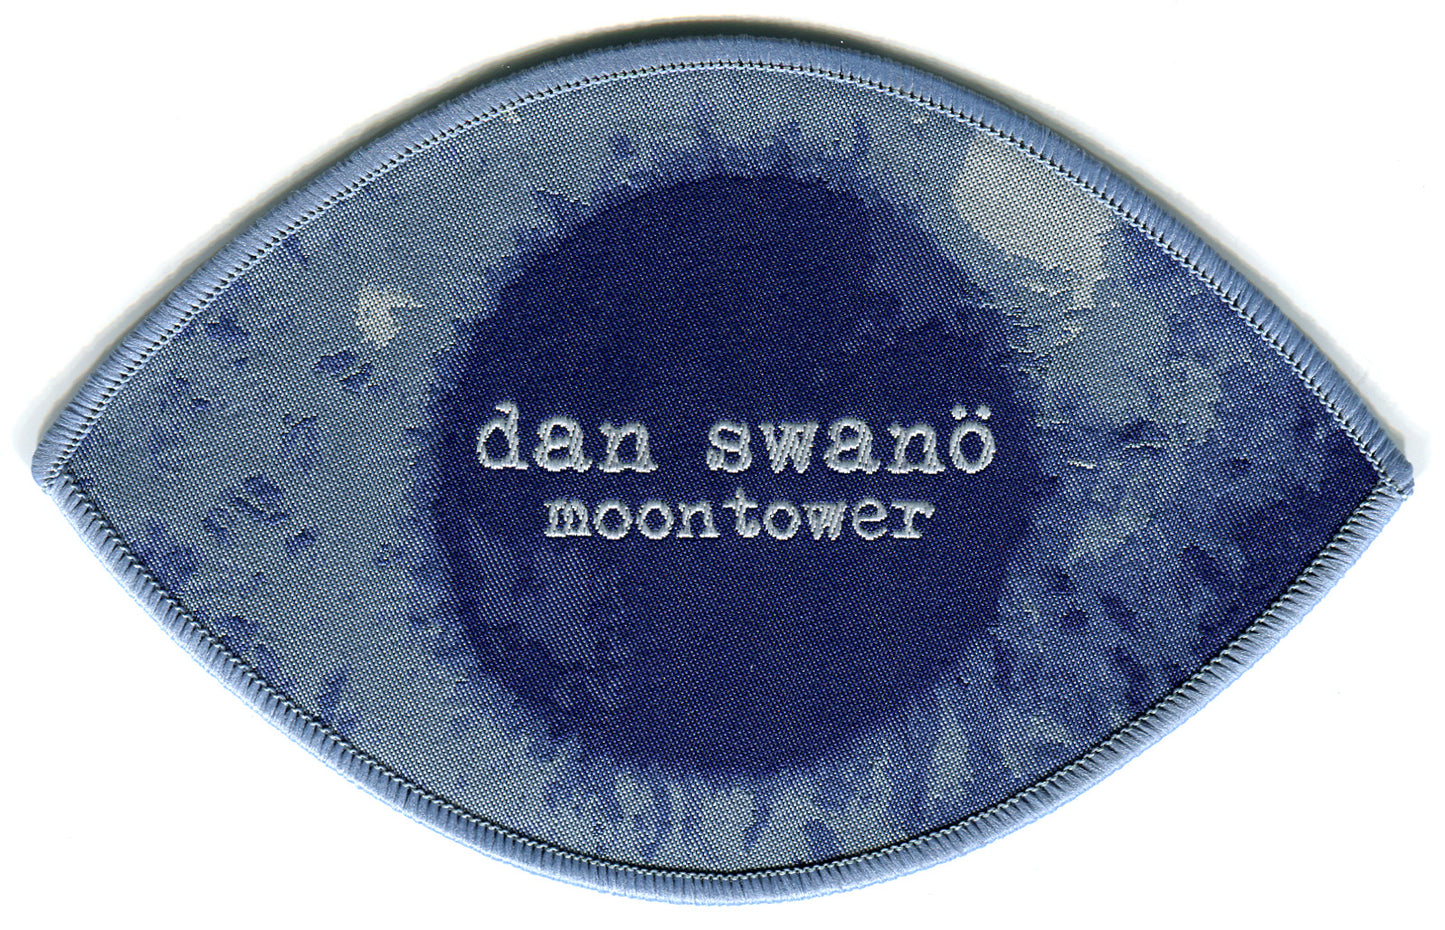 Dan Swanö - Moontower - Patch